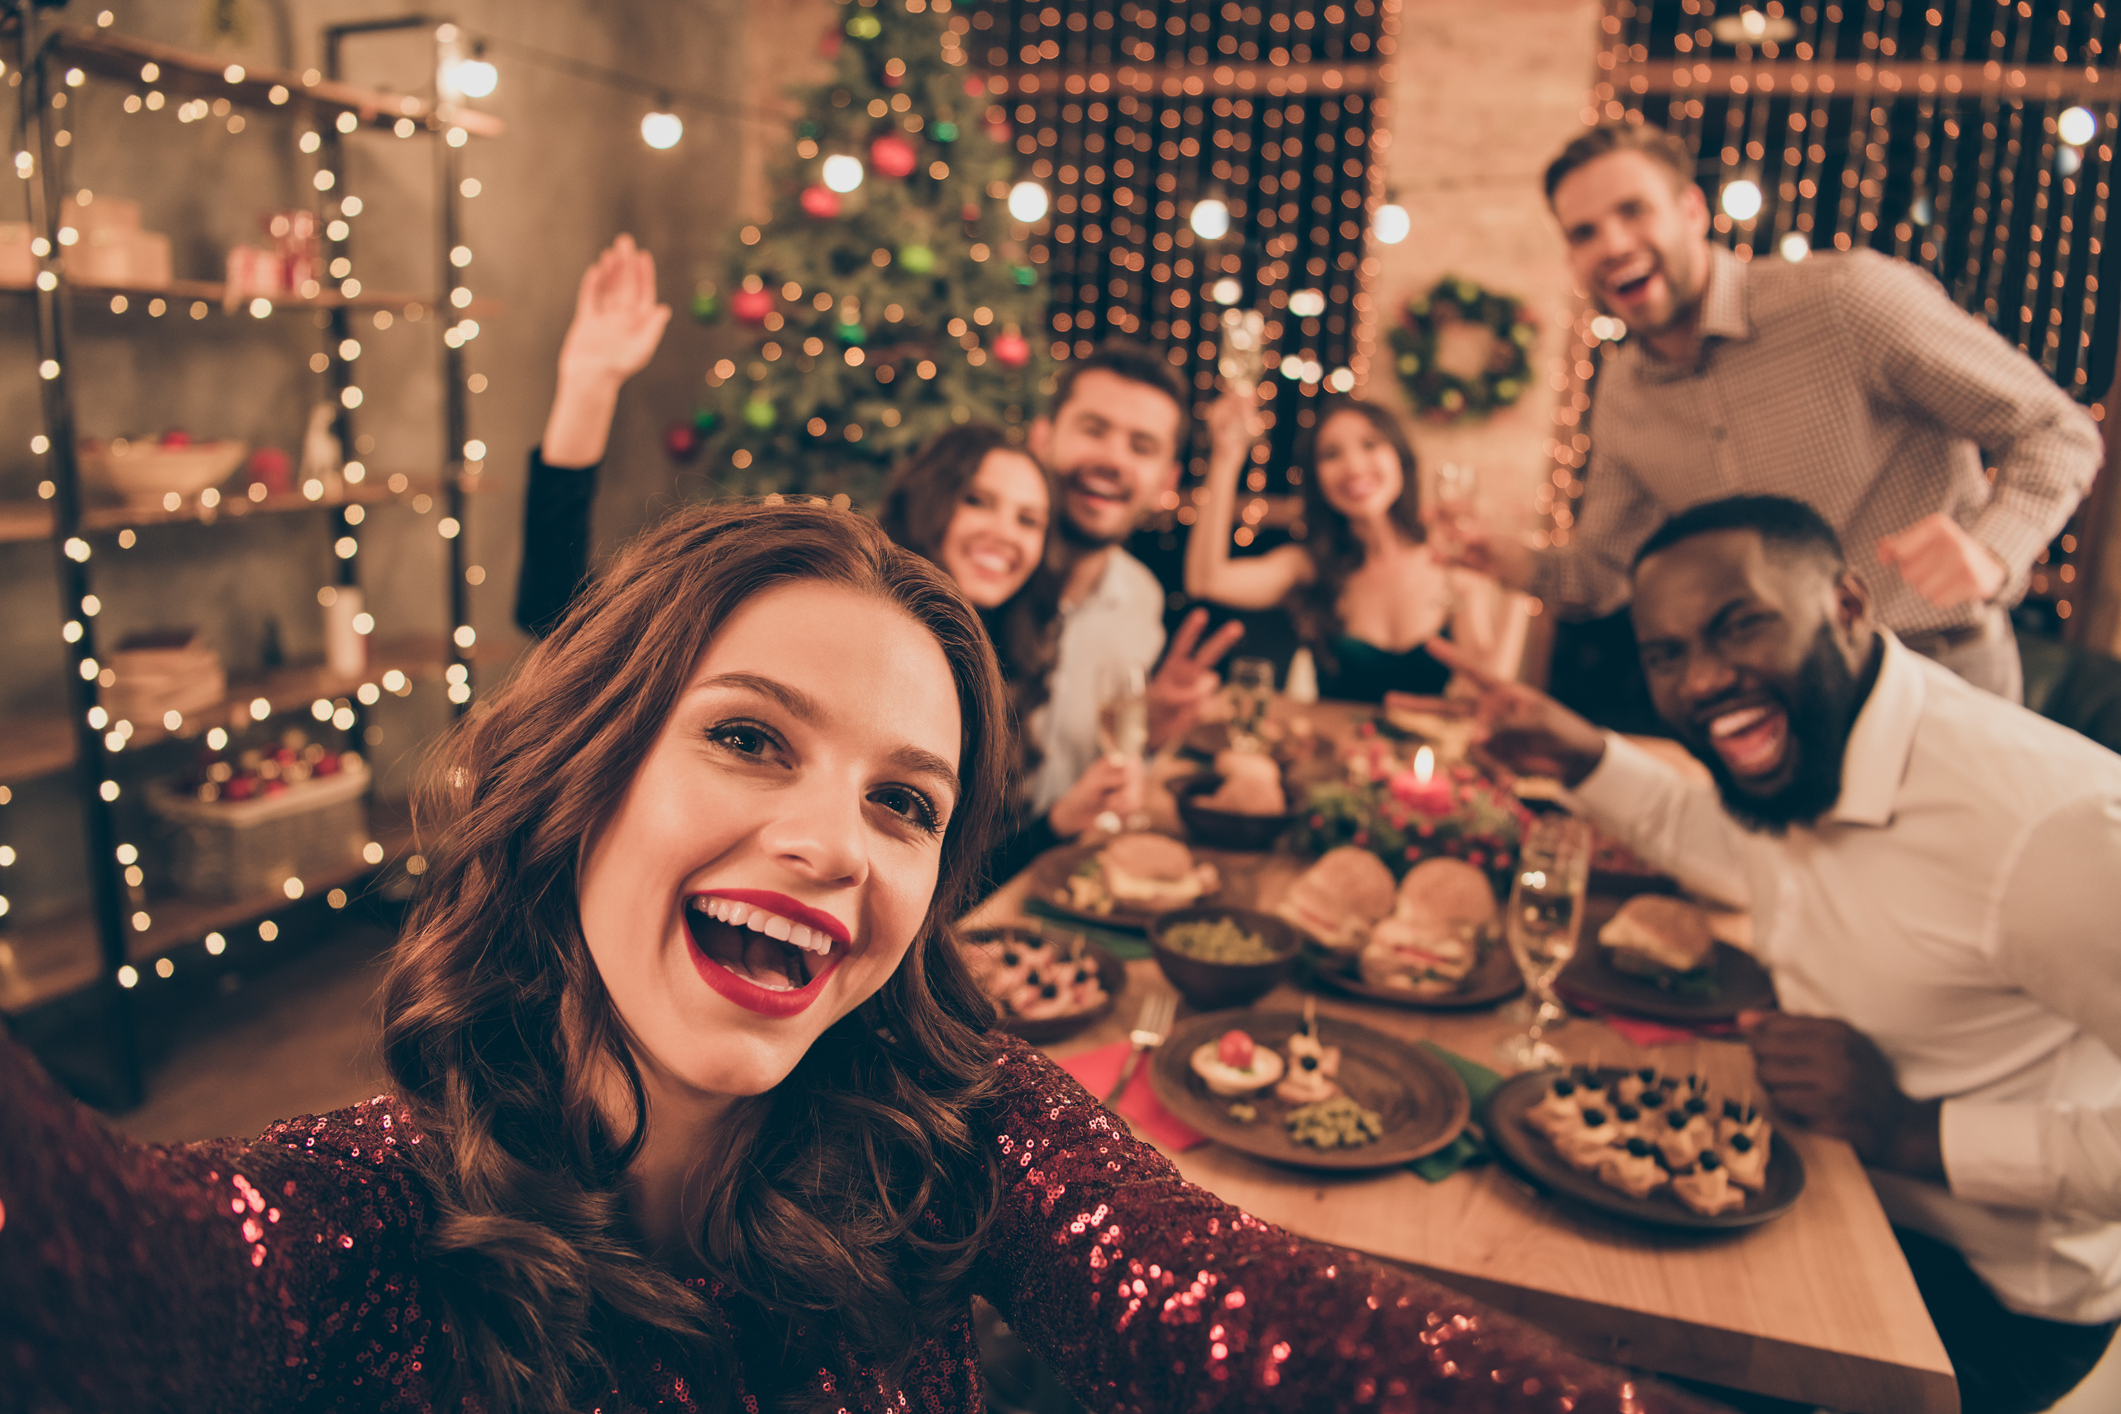 Les fêtes de fin d’année approchant, il est peut-être temps de préparer votre menu de Noël (ou de Nouvel An). Découvrez comment épater vos convives, avec des recettes apéritives sans gluten, rapides, faciles à réaliser et hautement déclinables!